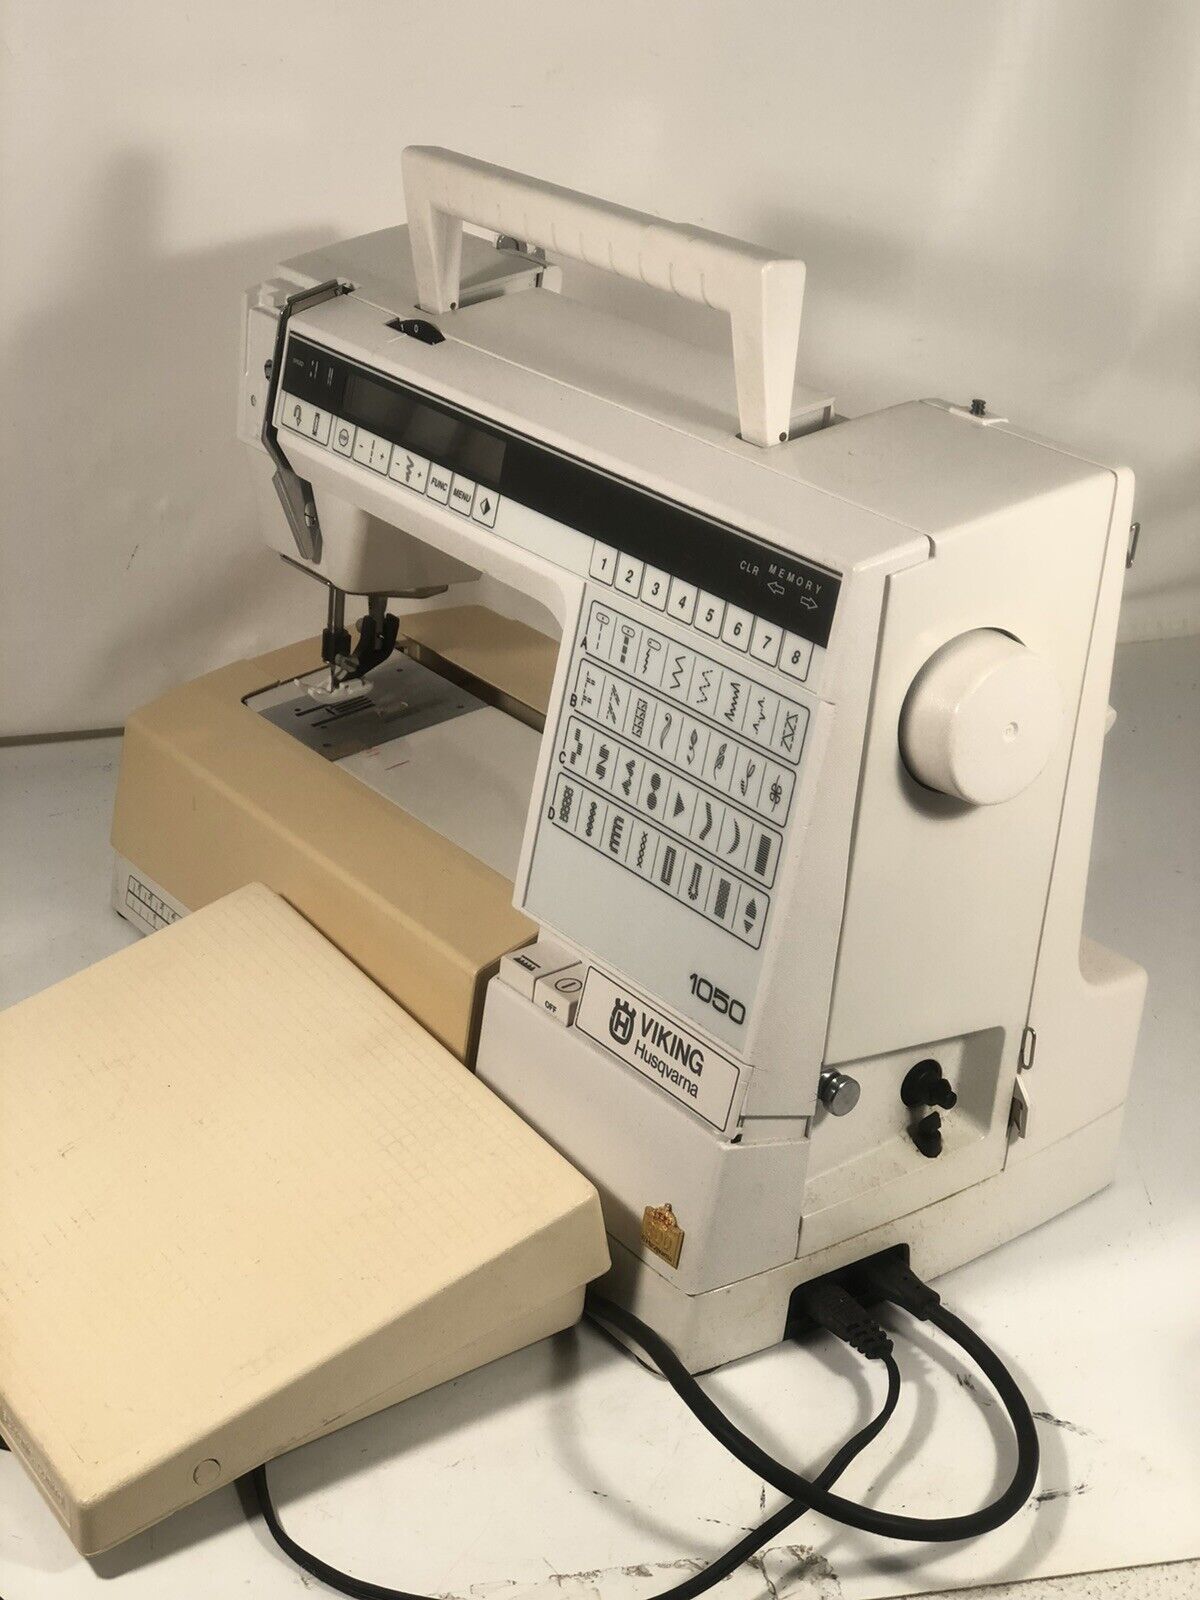 Organ Industrial Sewing Machine Needles 140/22 